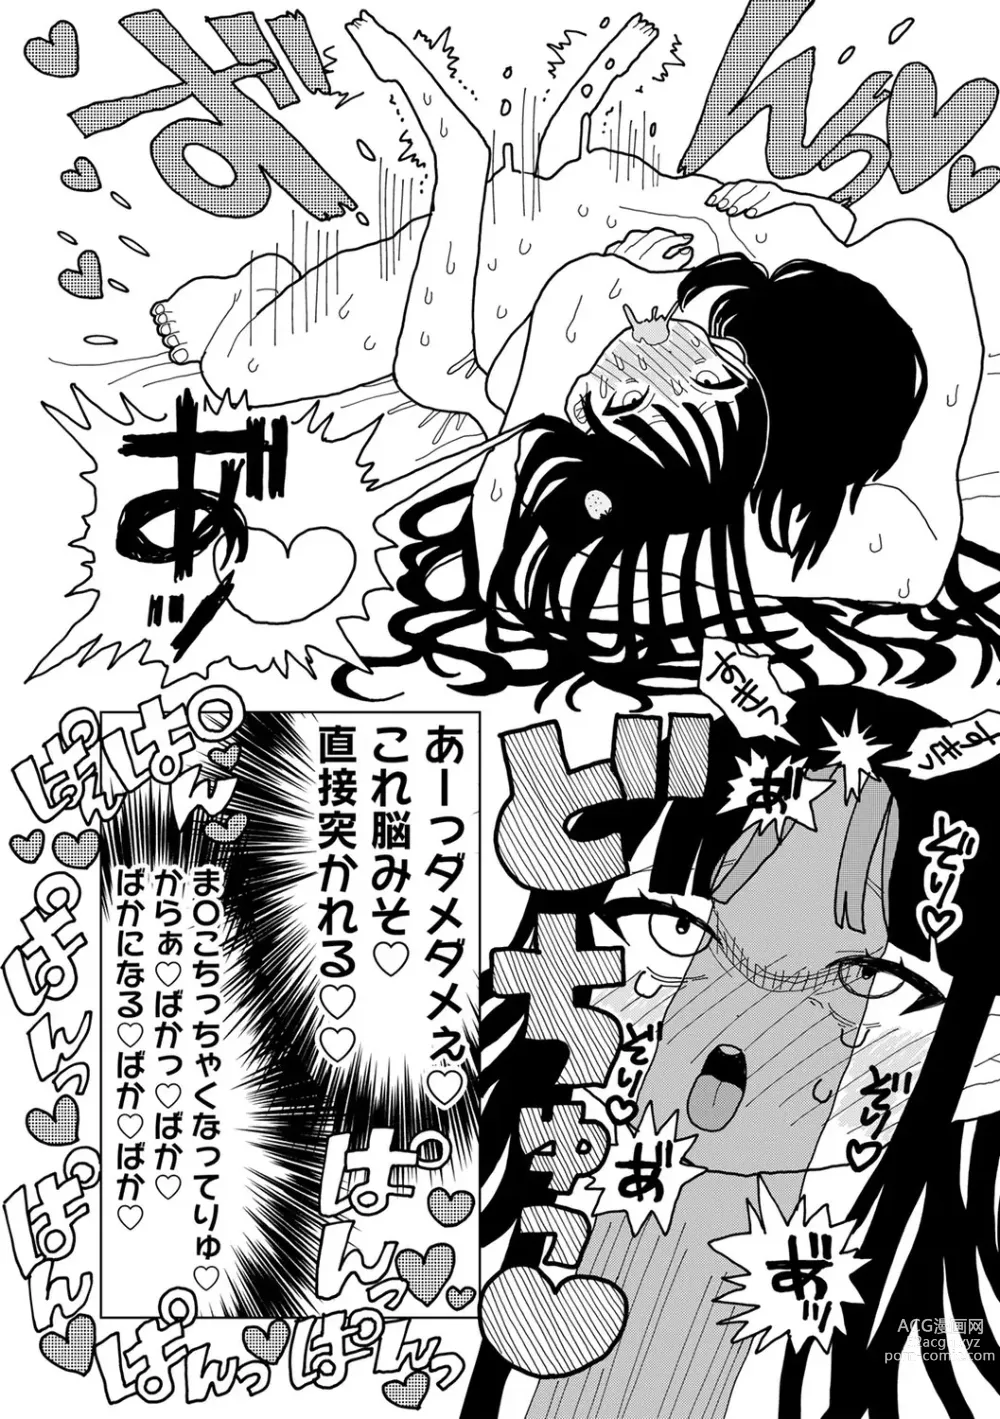 Page 189 of manga COMIC kisshug vol.3